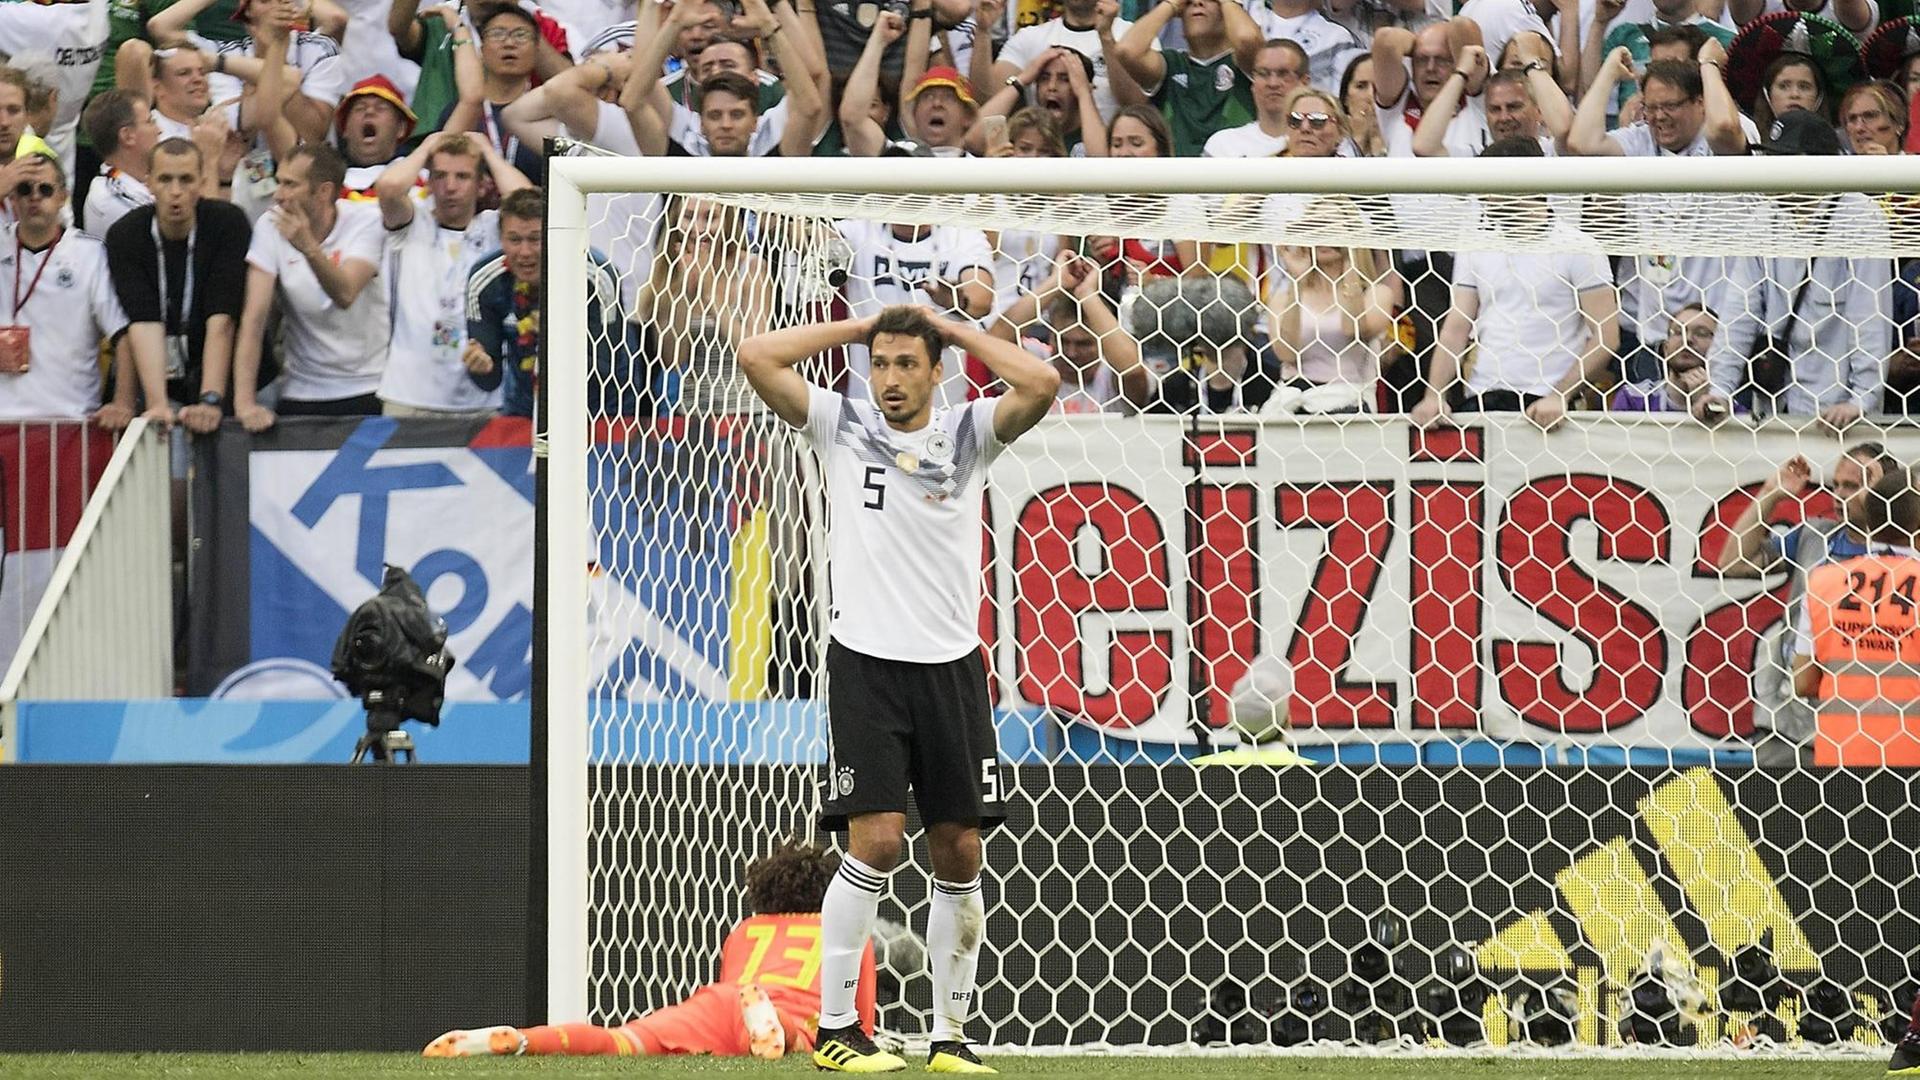 Mats Hummels ist nach einer vergebenen Torchance im ersten Vorrundenspiel gegen Mexiko enttäuscht. Auch die deutschen Fans im Hintergrund sind entsetzt.